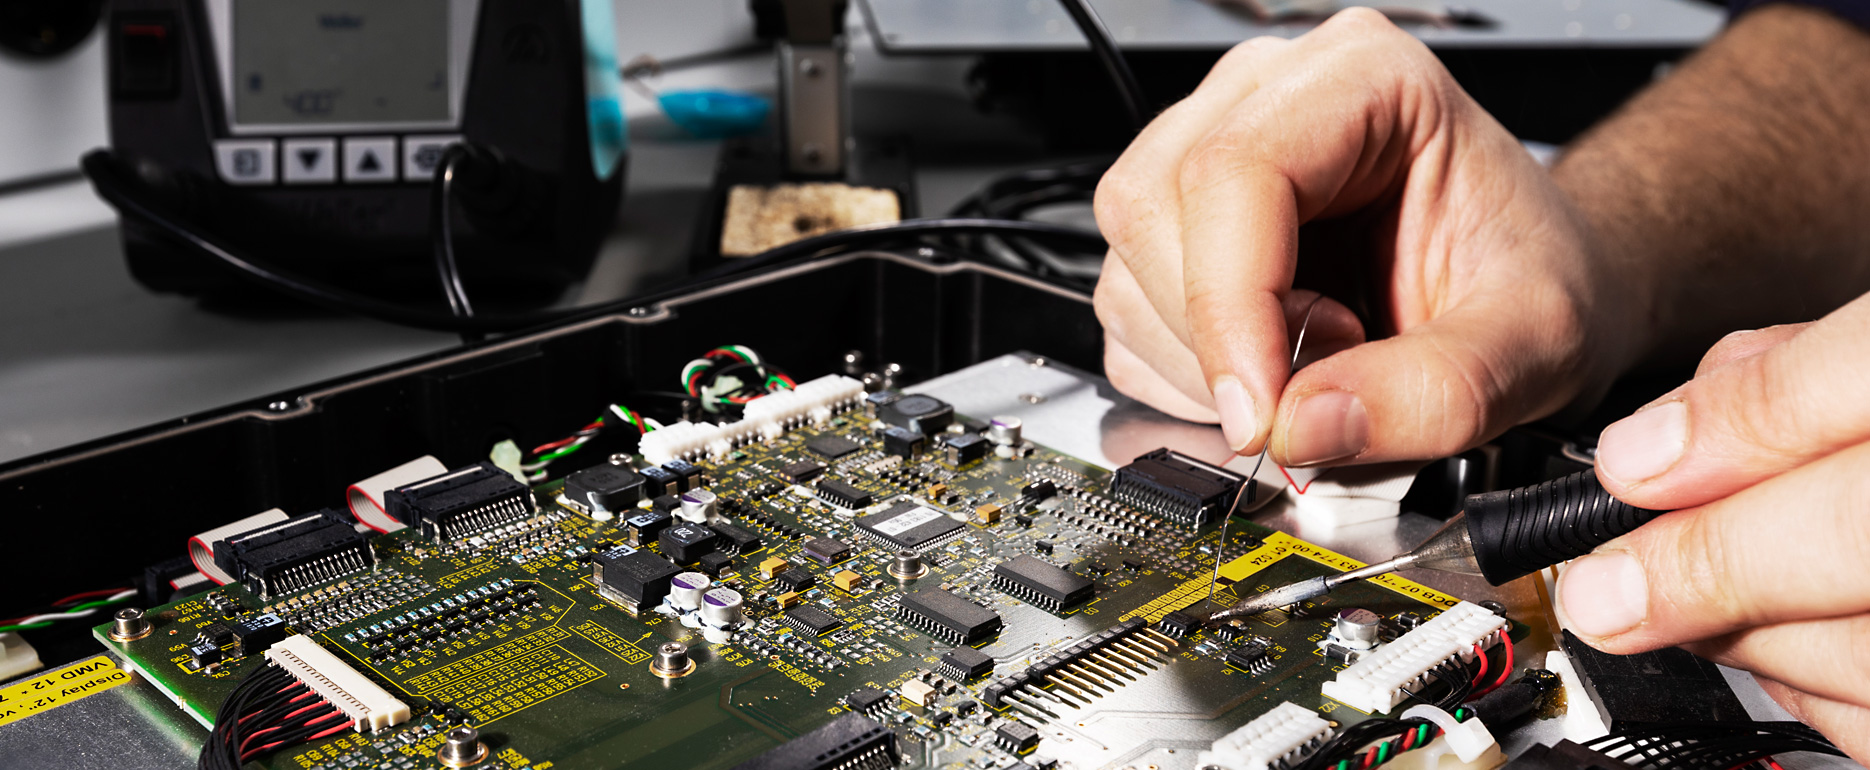 Ein Entwickler repariert ein elektronisches Gerät